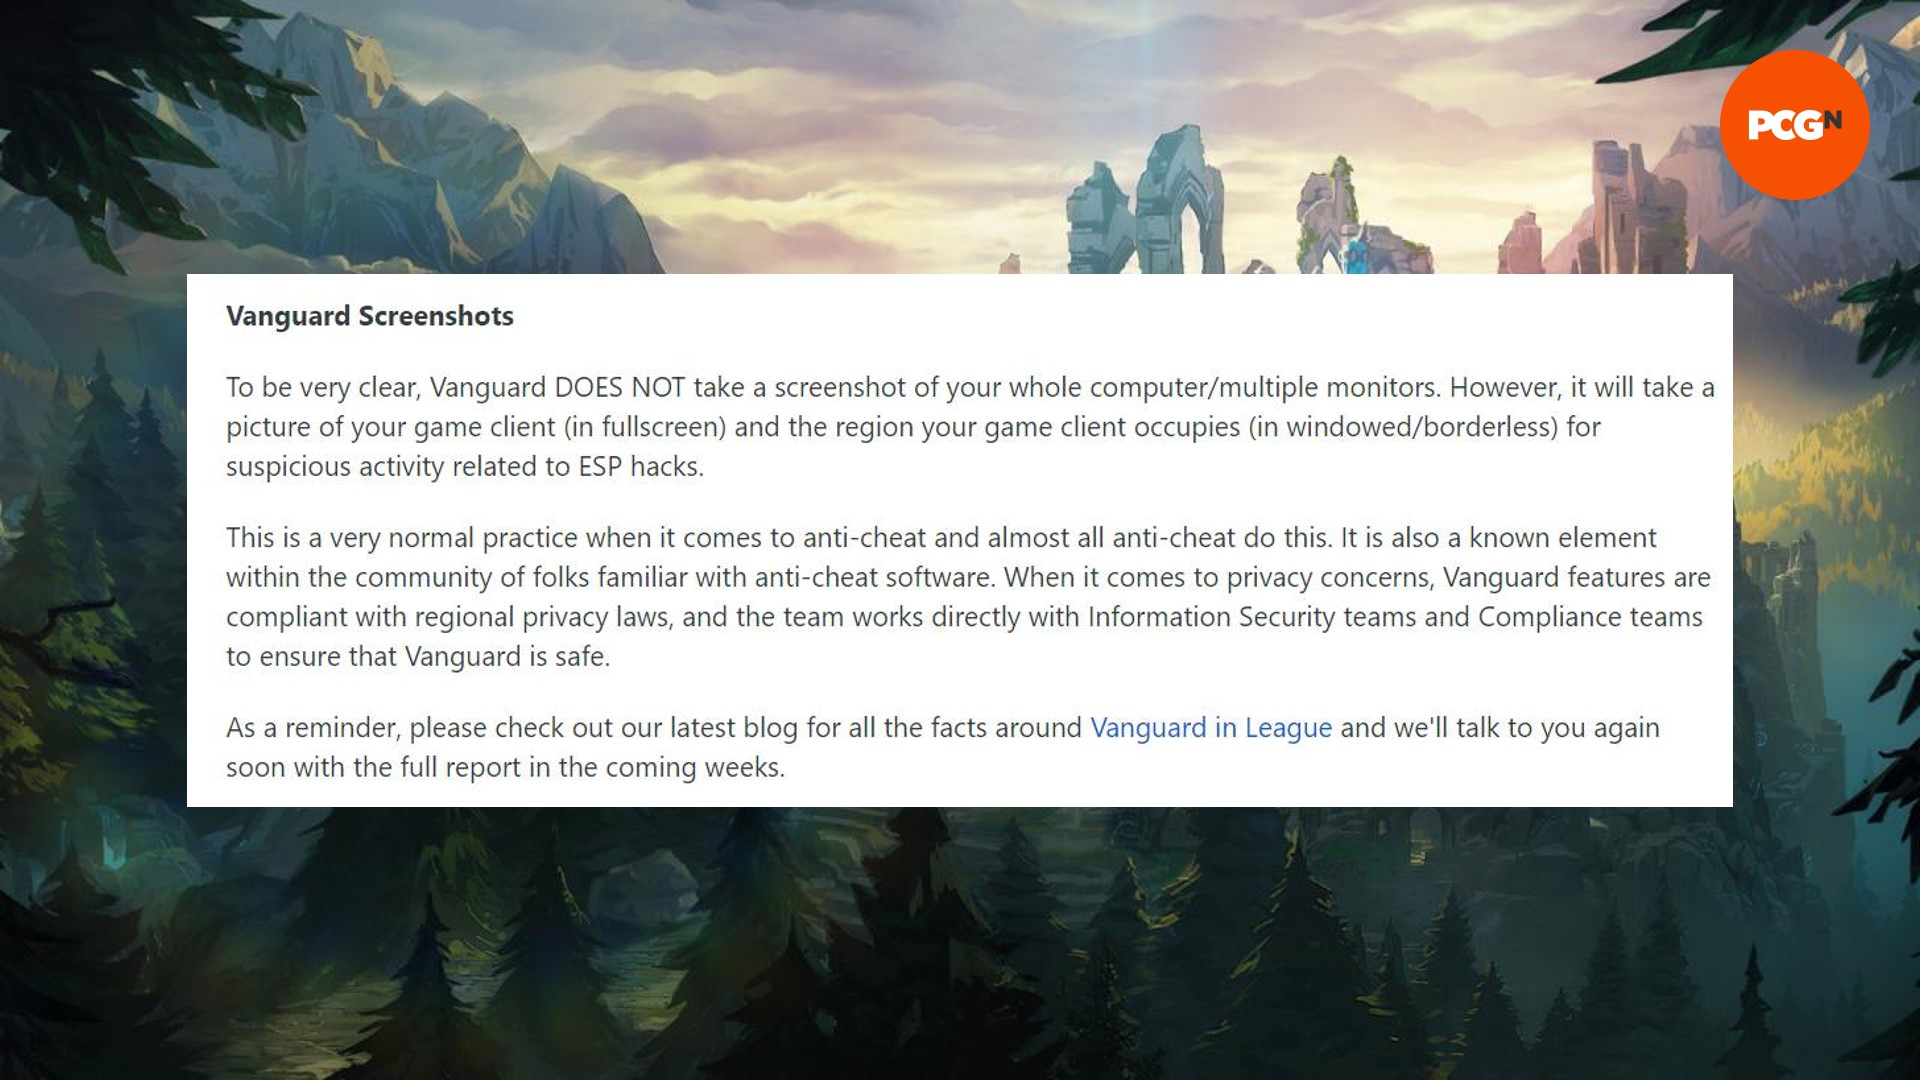 Una publicación en Reddit de Riot Games que analiza los supuestos problemas con las capturas de pantalla anti-trampas de Vanguard en PC